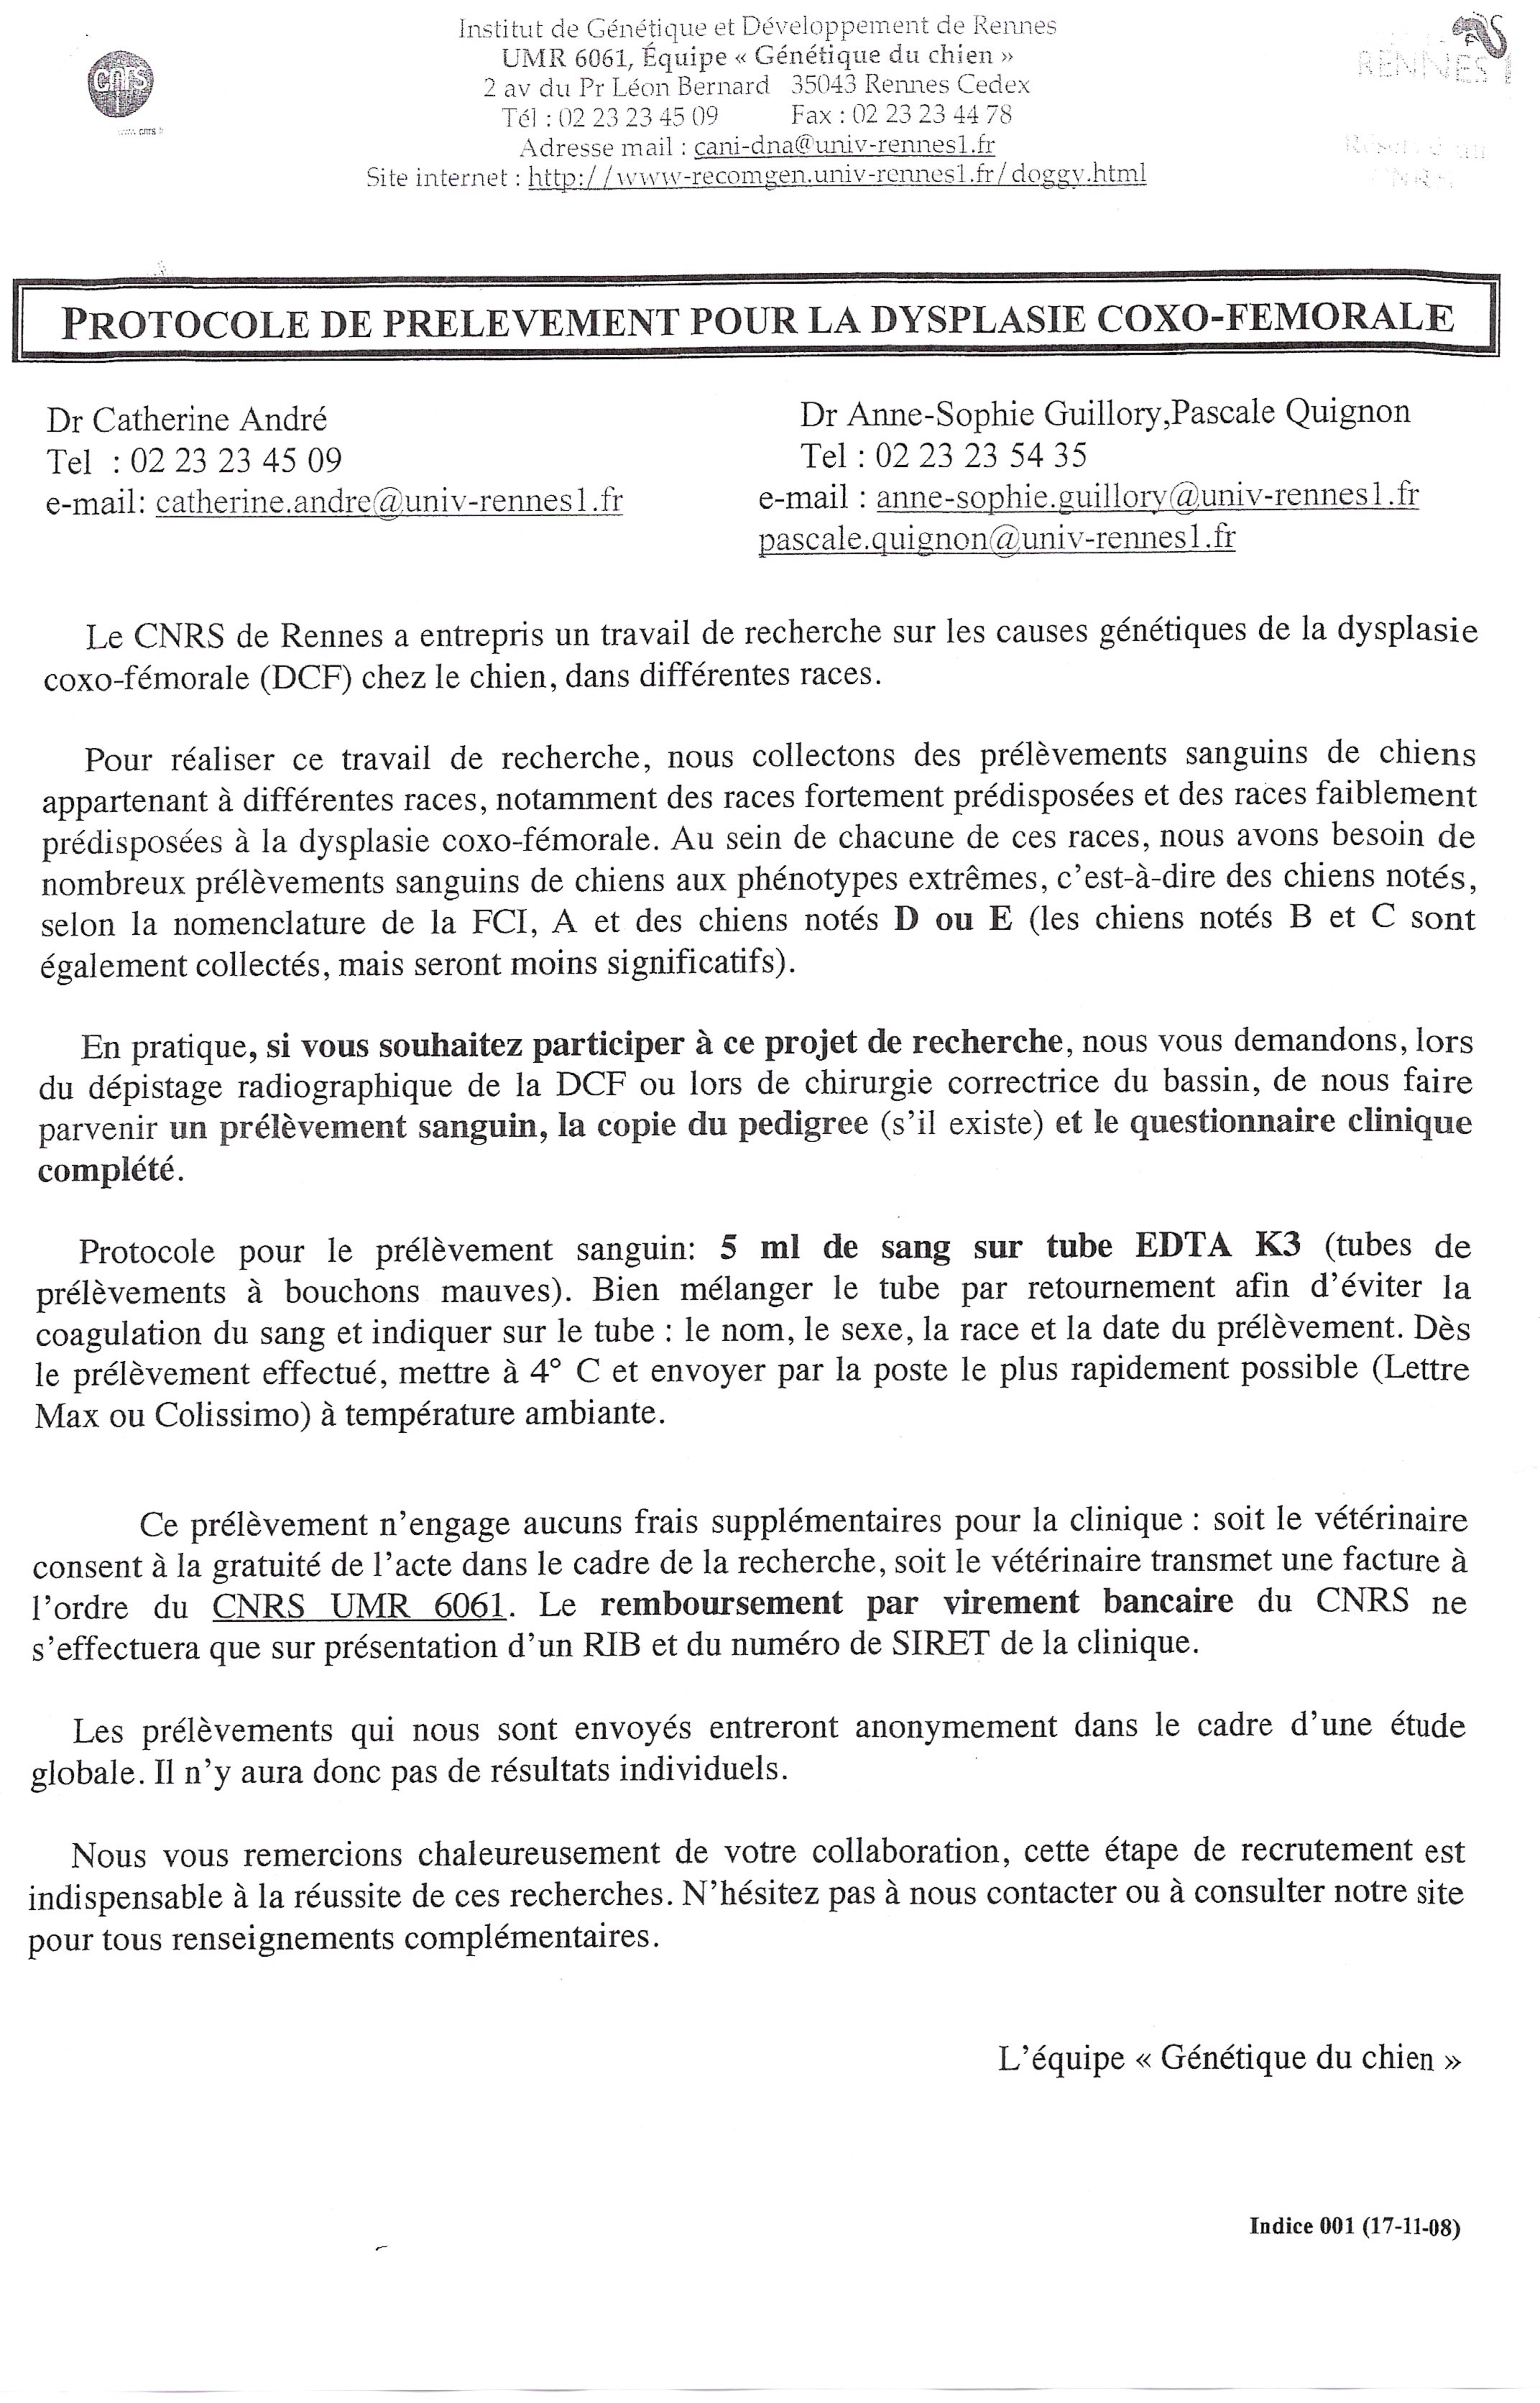 Recherche CNRS de Rennes : causes génétique de la dysplasie du chien - Page 2 110110022119826287448820